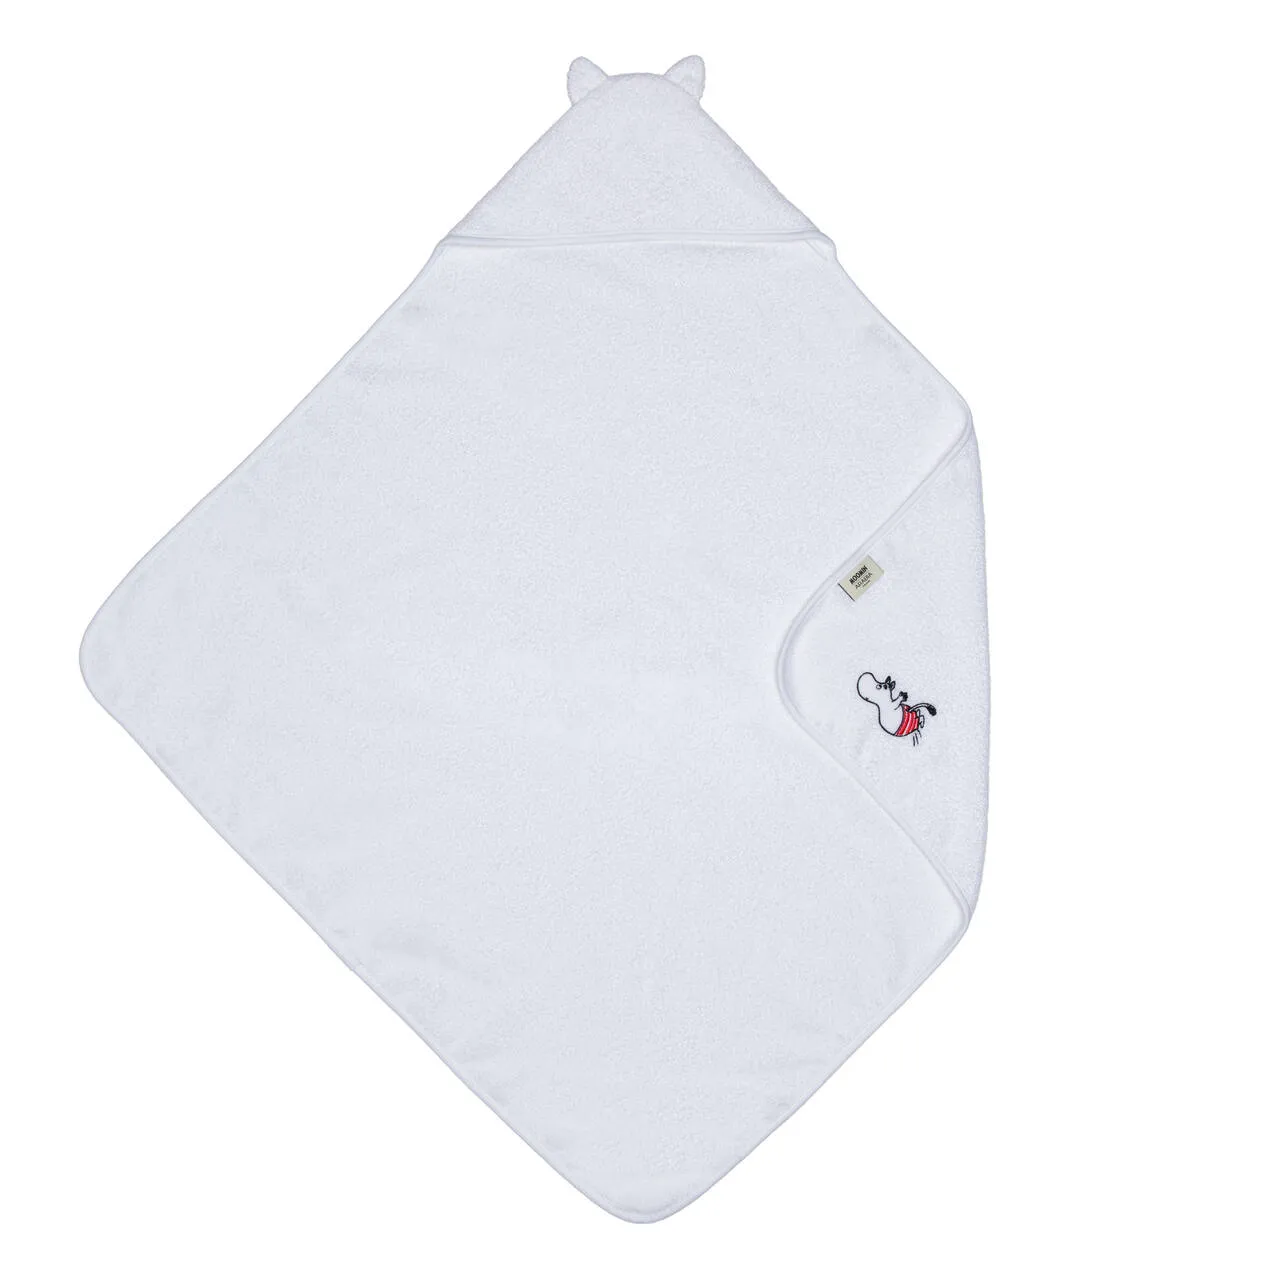 1069908_Moomin_Moomin-hooded-towel-Moomintroll_01.jpg